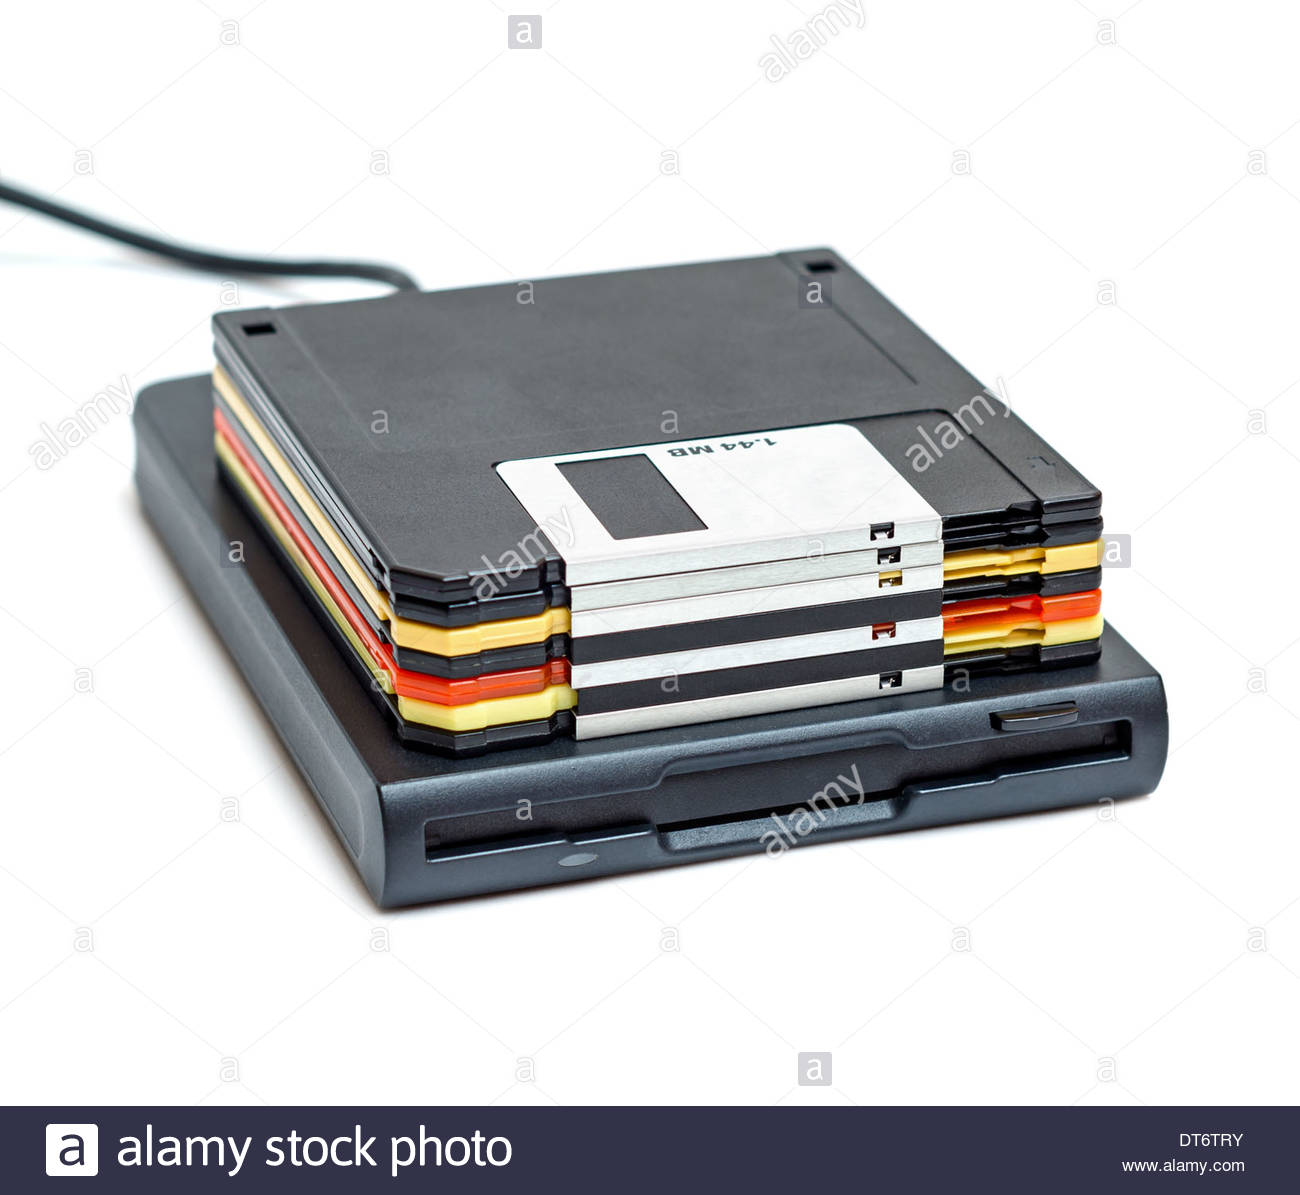 Floppy disc reader usb